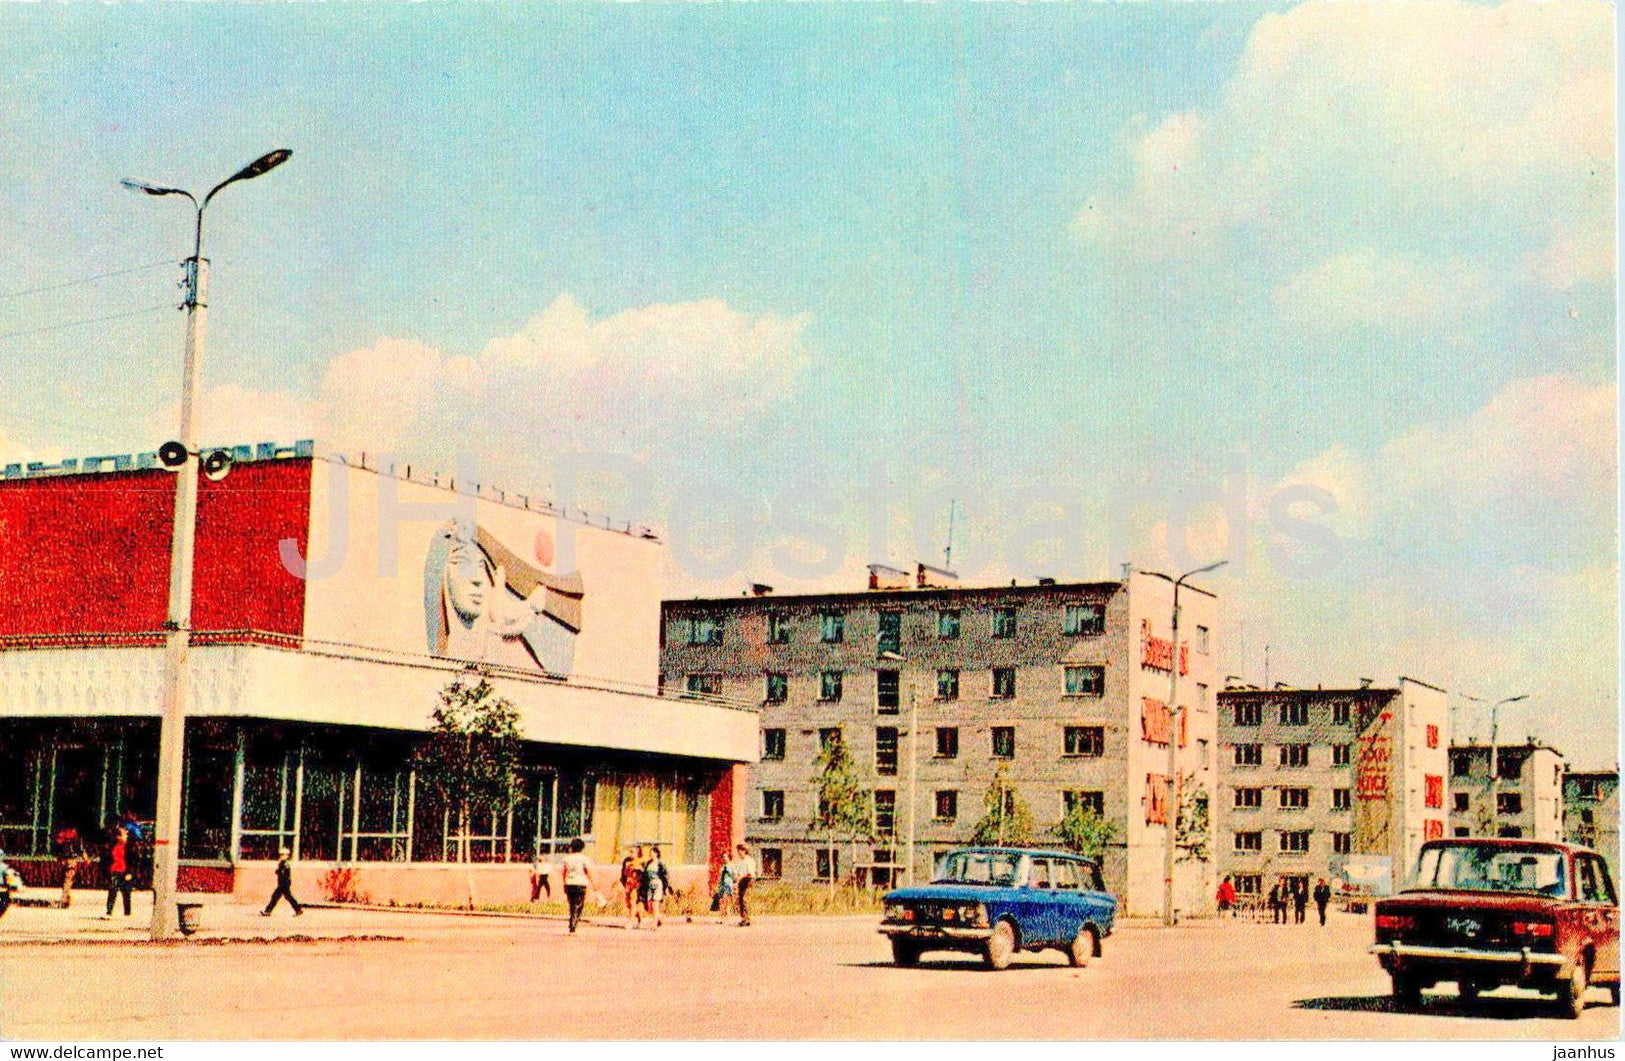 Tatarstan - Naberezhnye Chelny - Hydrobuilders street - car Moskvich Zhiguli - 1973 - Russia USSR - unused - JH Postcards